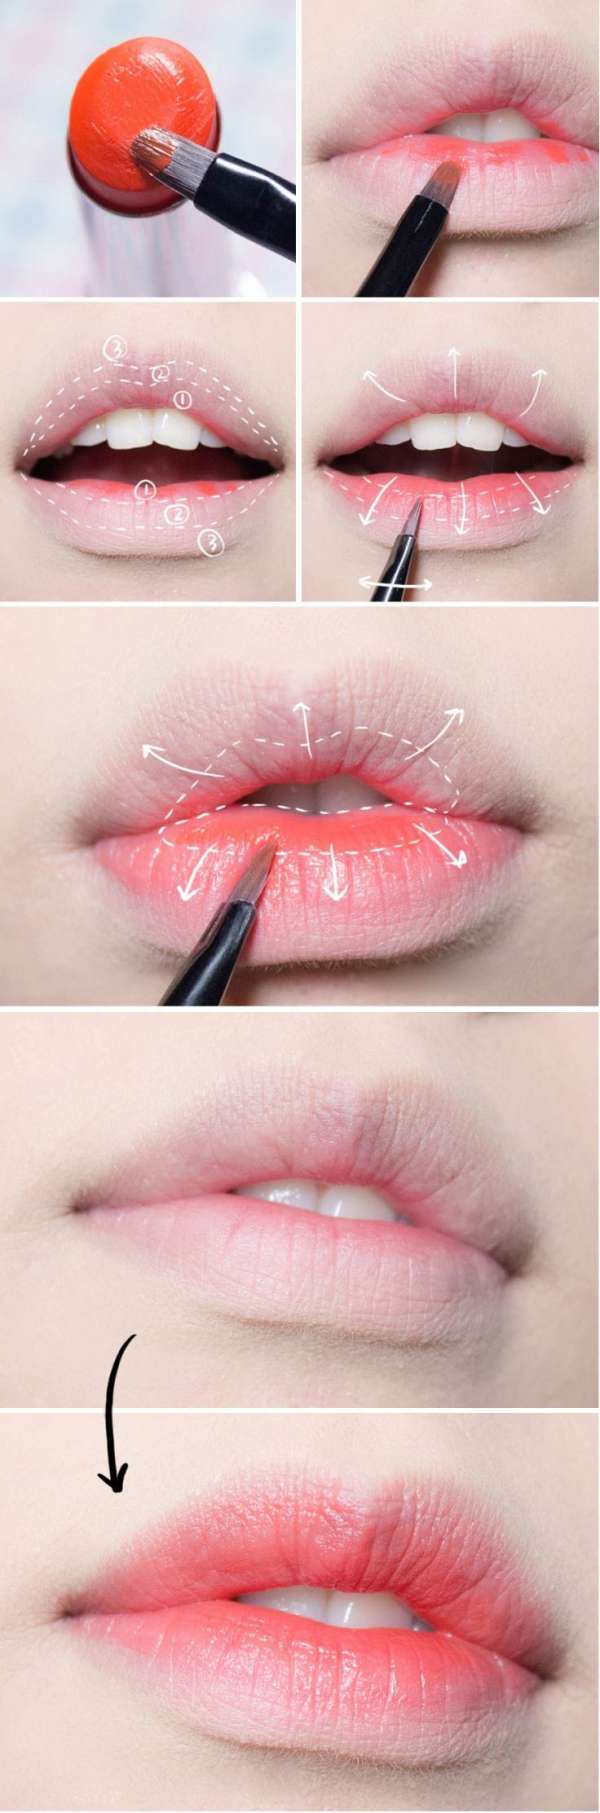 Maquillage lèvres fruitées